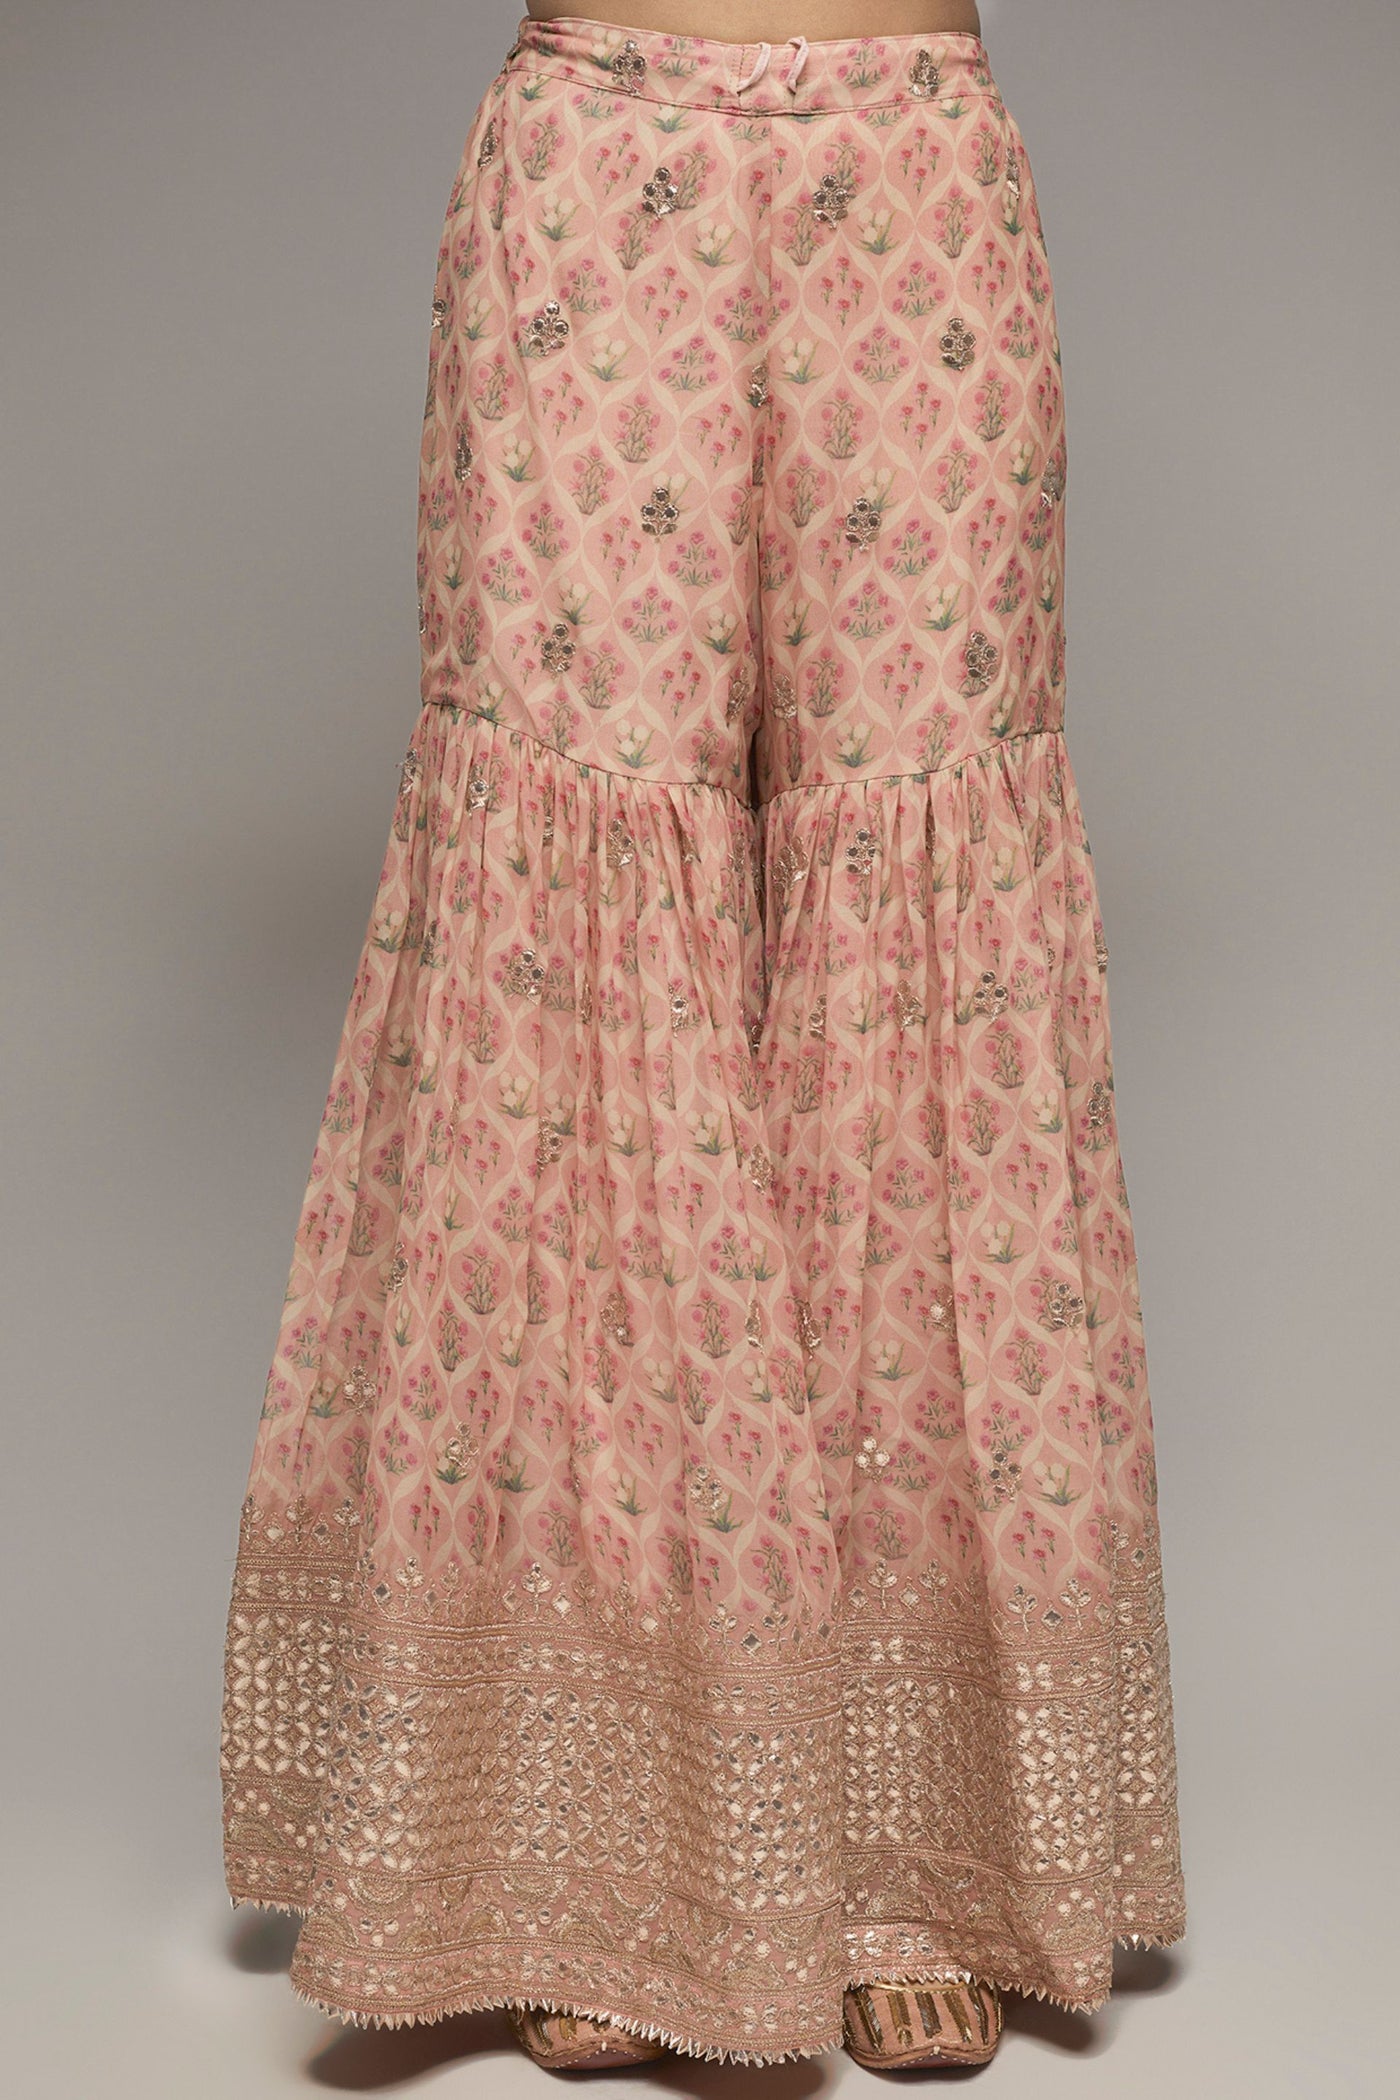 Gopi Vaid Nusrat selvless sharara set pink set indian designer womenswear fashion online shopping melange singapore